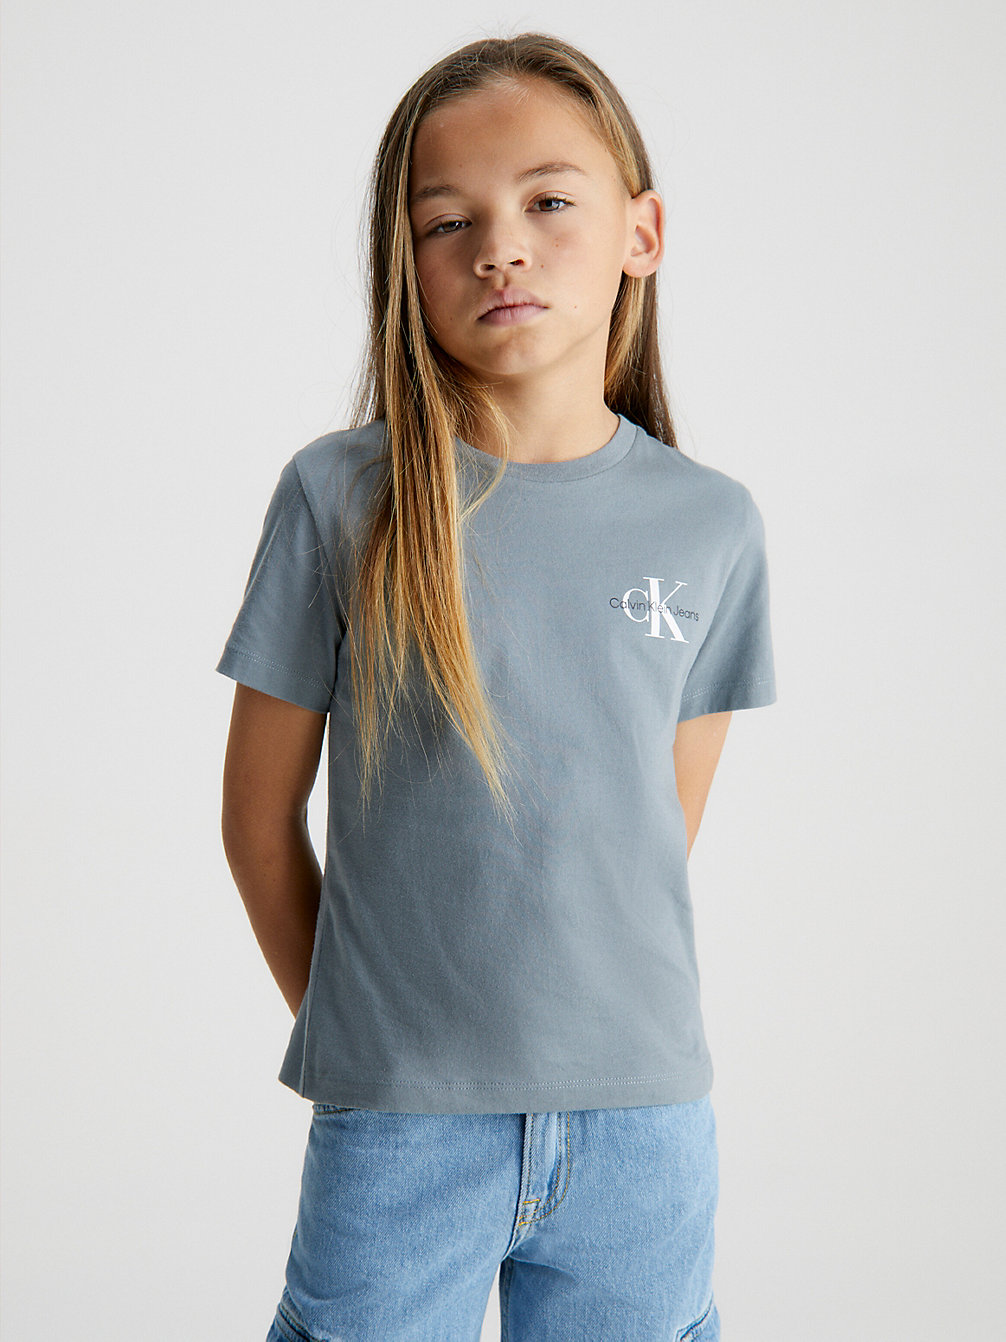 OVERCAST GREY T-Shirt Van Biologisch Katoen undefined boys Calvin Klein